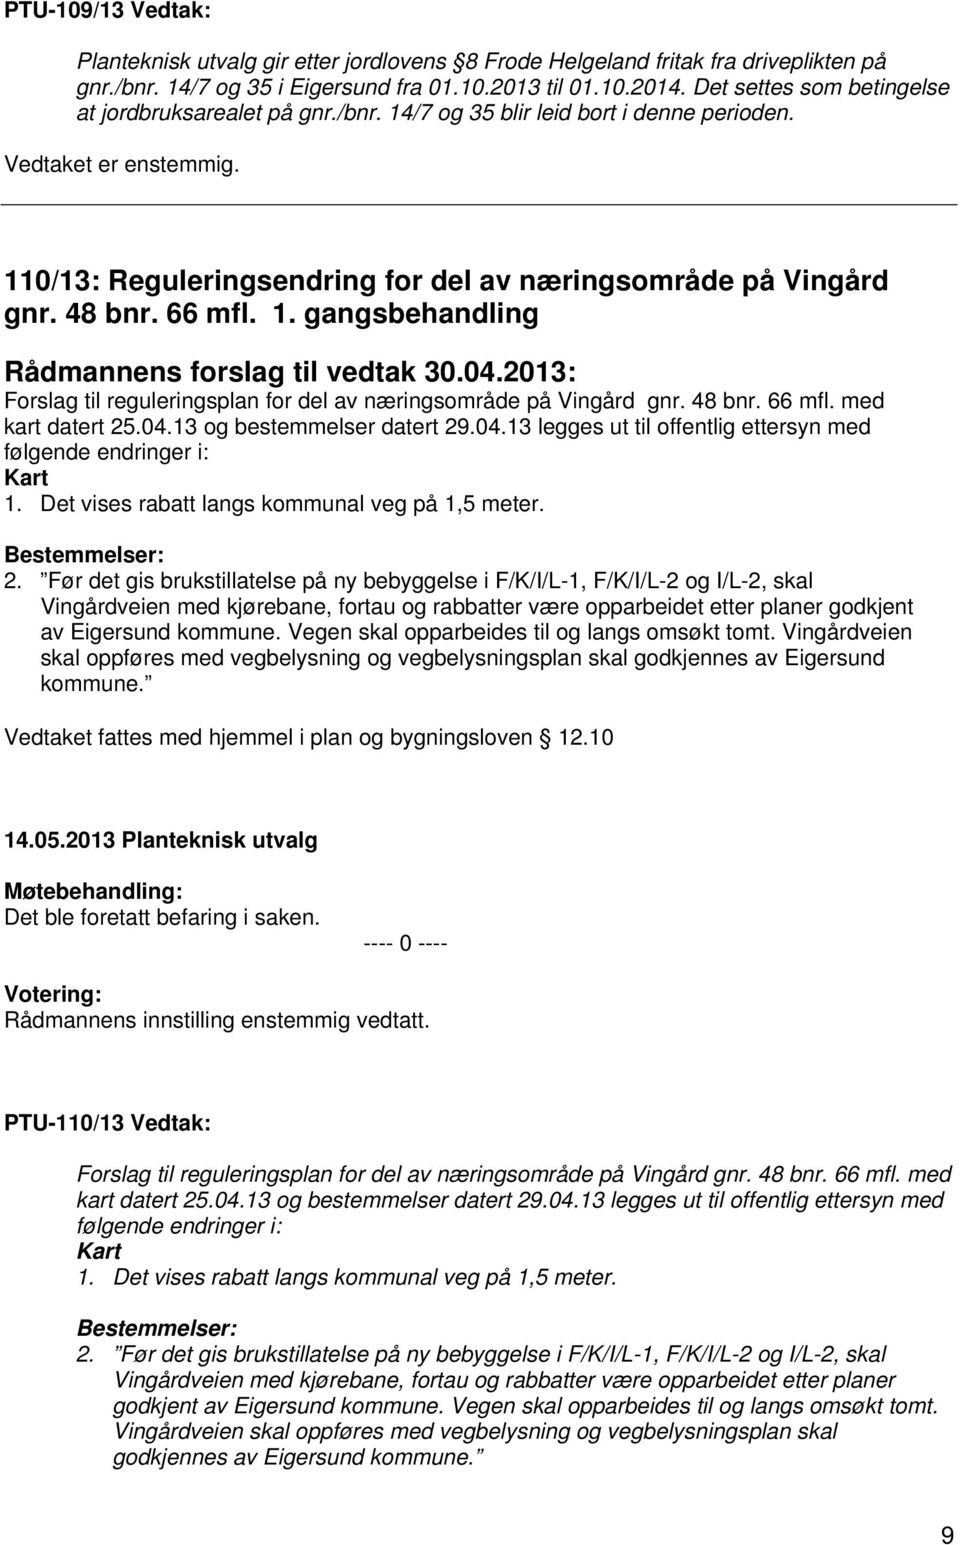 04.2013: Forslag til reguleringsplan for del av næringsområde på Vingård gnr. 48 bnr. 66 mfl. med kart datert 25.04.13 og bestemmelser datert 29.04.13 legges ut til offentlig ettersyn med følgende endringer i: Kart 1.